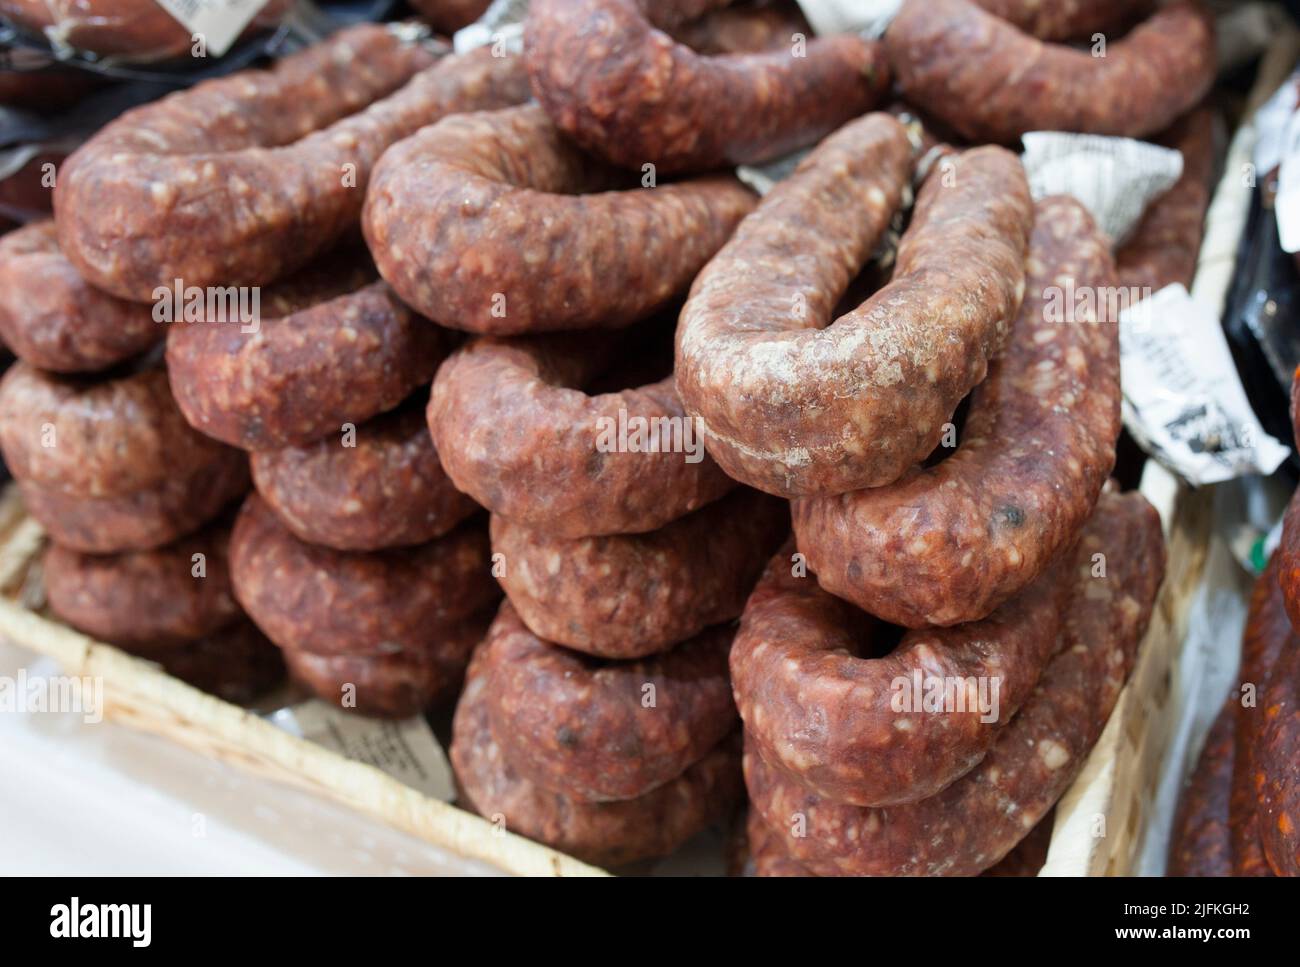 Salchichon o salsiccia piccante iberica. Visualizzato in stallo del mercato stradale. Foto Stock